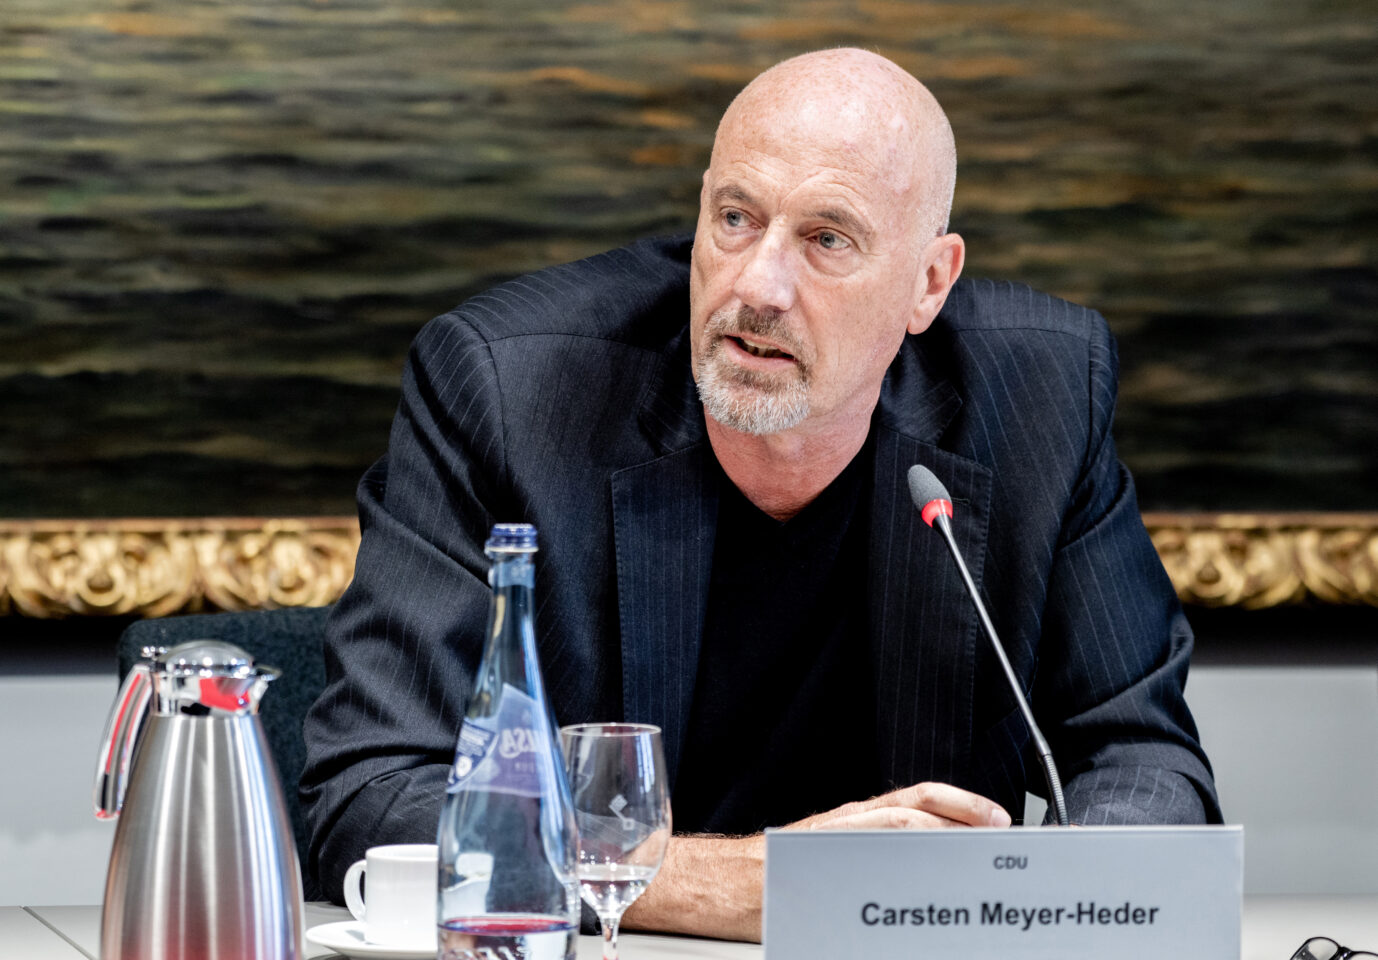 Carsten Meyer-Heder, Landesvorsitzender der CDU in Bremen, spricht während der Landespressekonferenz nach der Bürgerschaftswahl in Bremen im Rathaus. Rücktritt nach AfD-Äußerung.